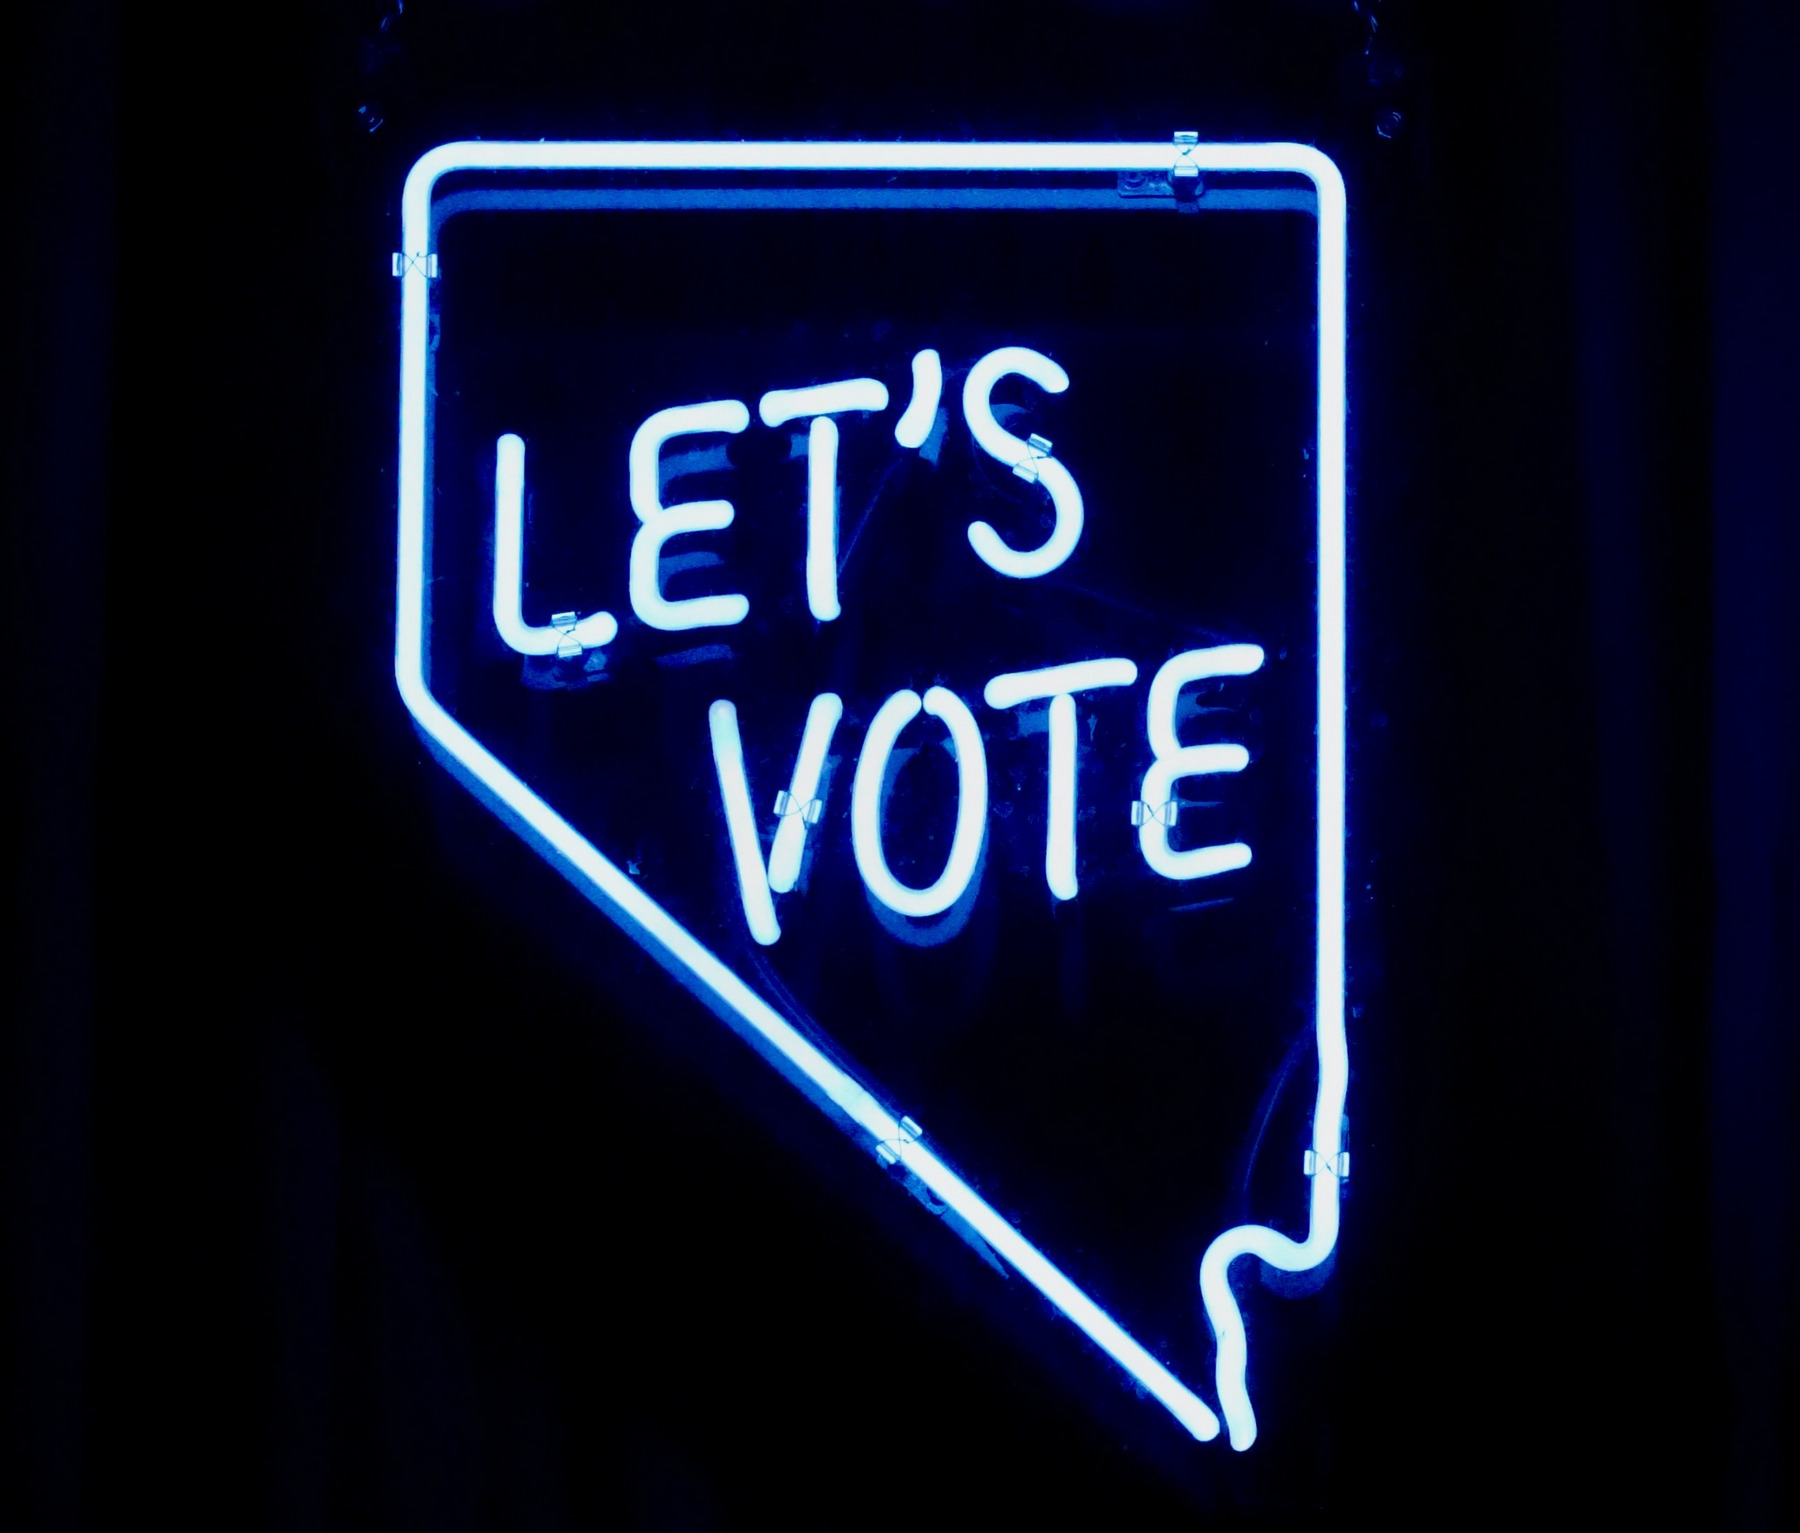 Eine Leuchtreklame mit dem Aufruf "Let's vote" ("Lasst uns wählen")